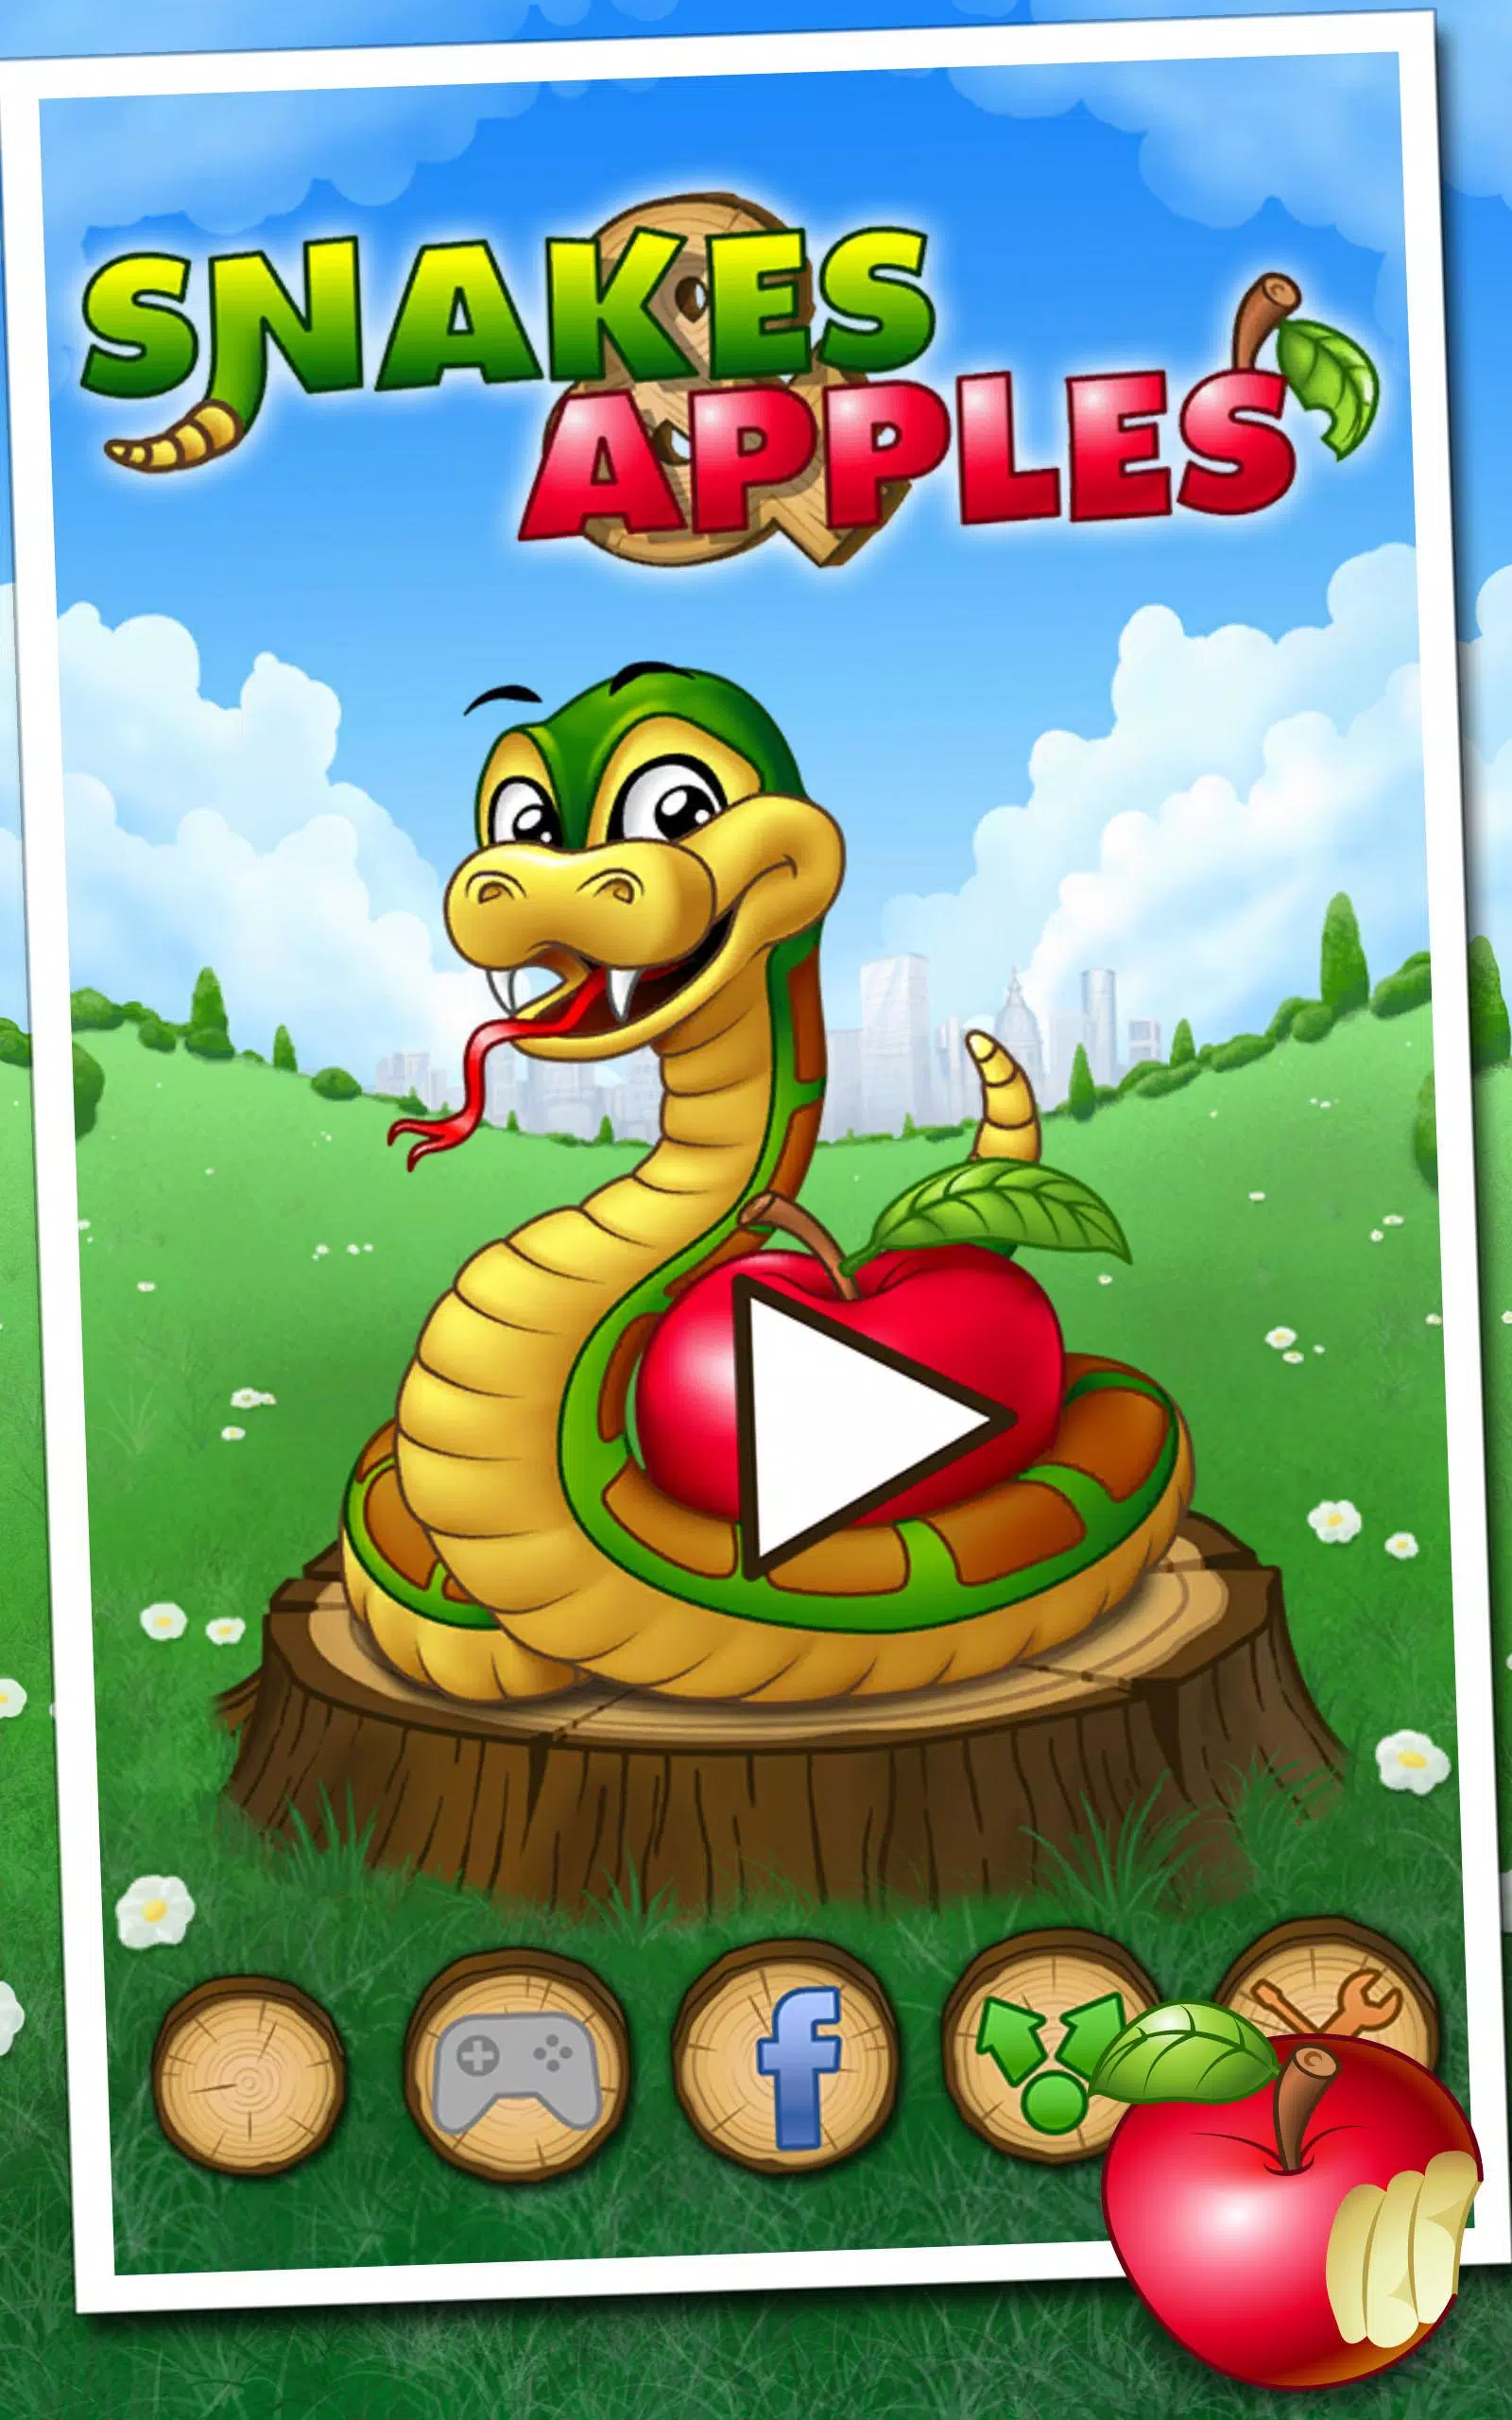 Snake Rivals: jogo da cobrinha – Apps no Google Play